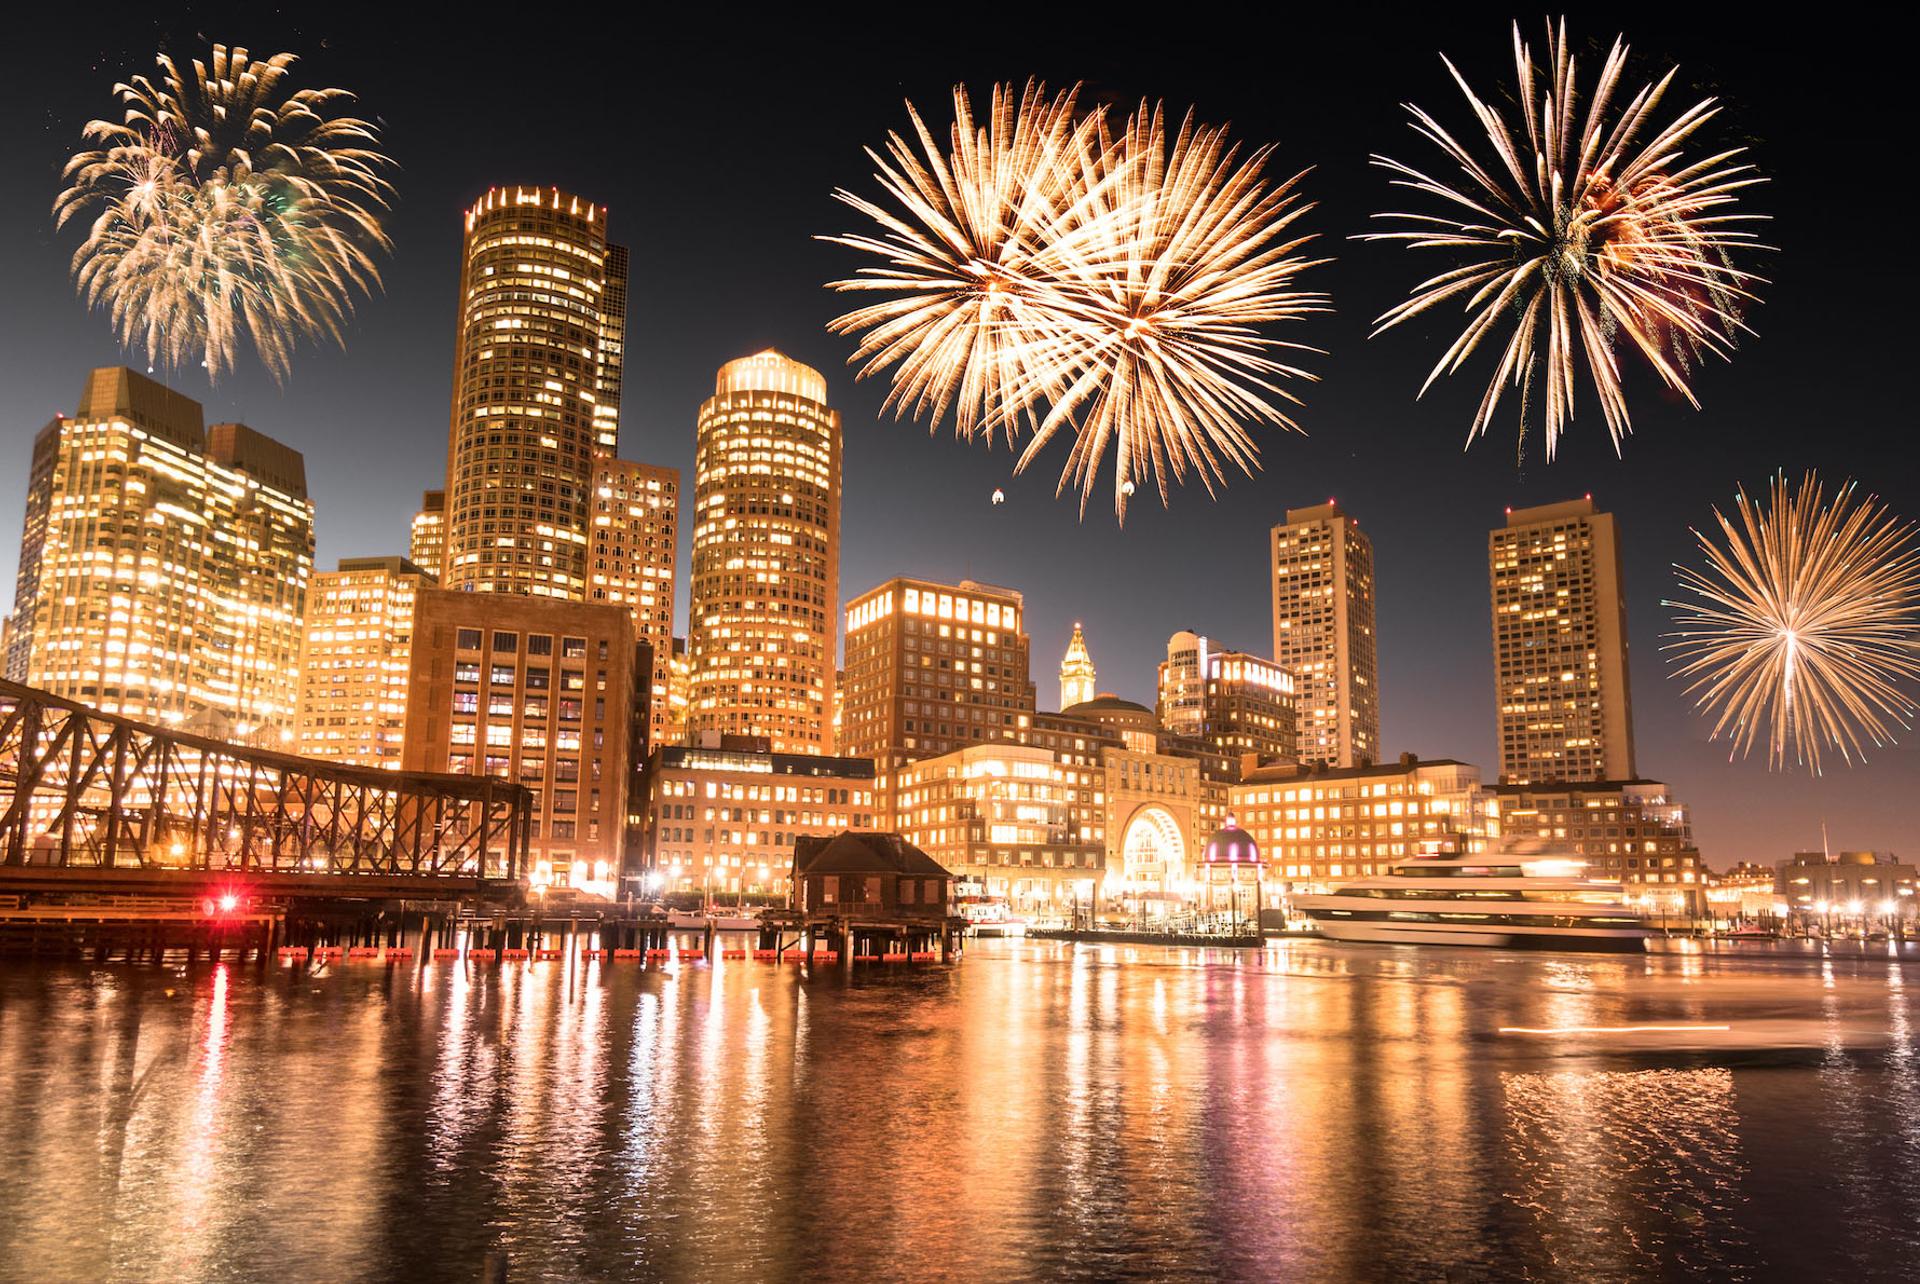 Boston Harborfest: Fireworks